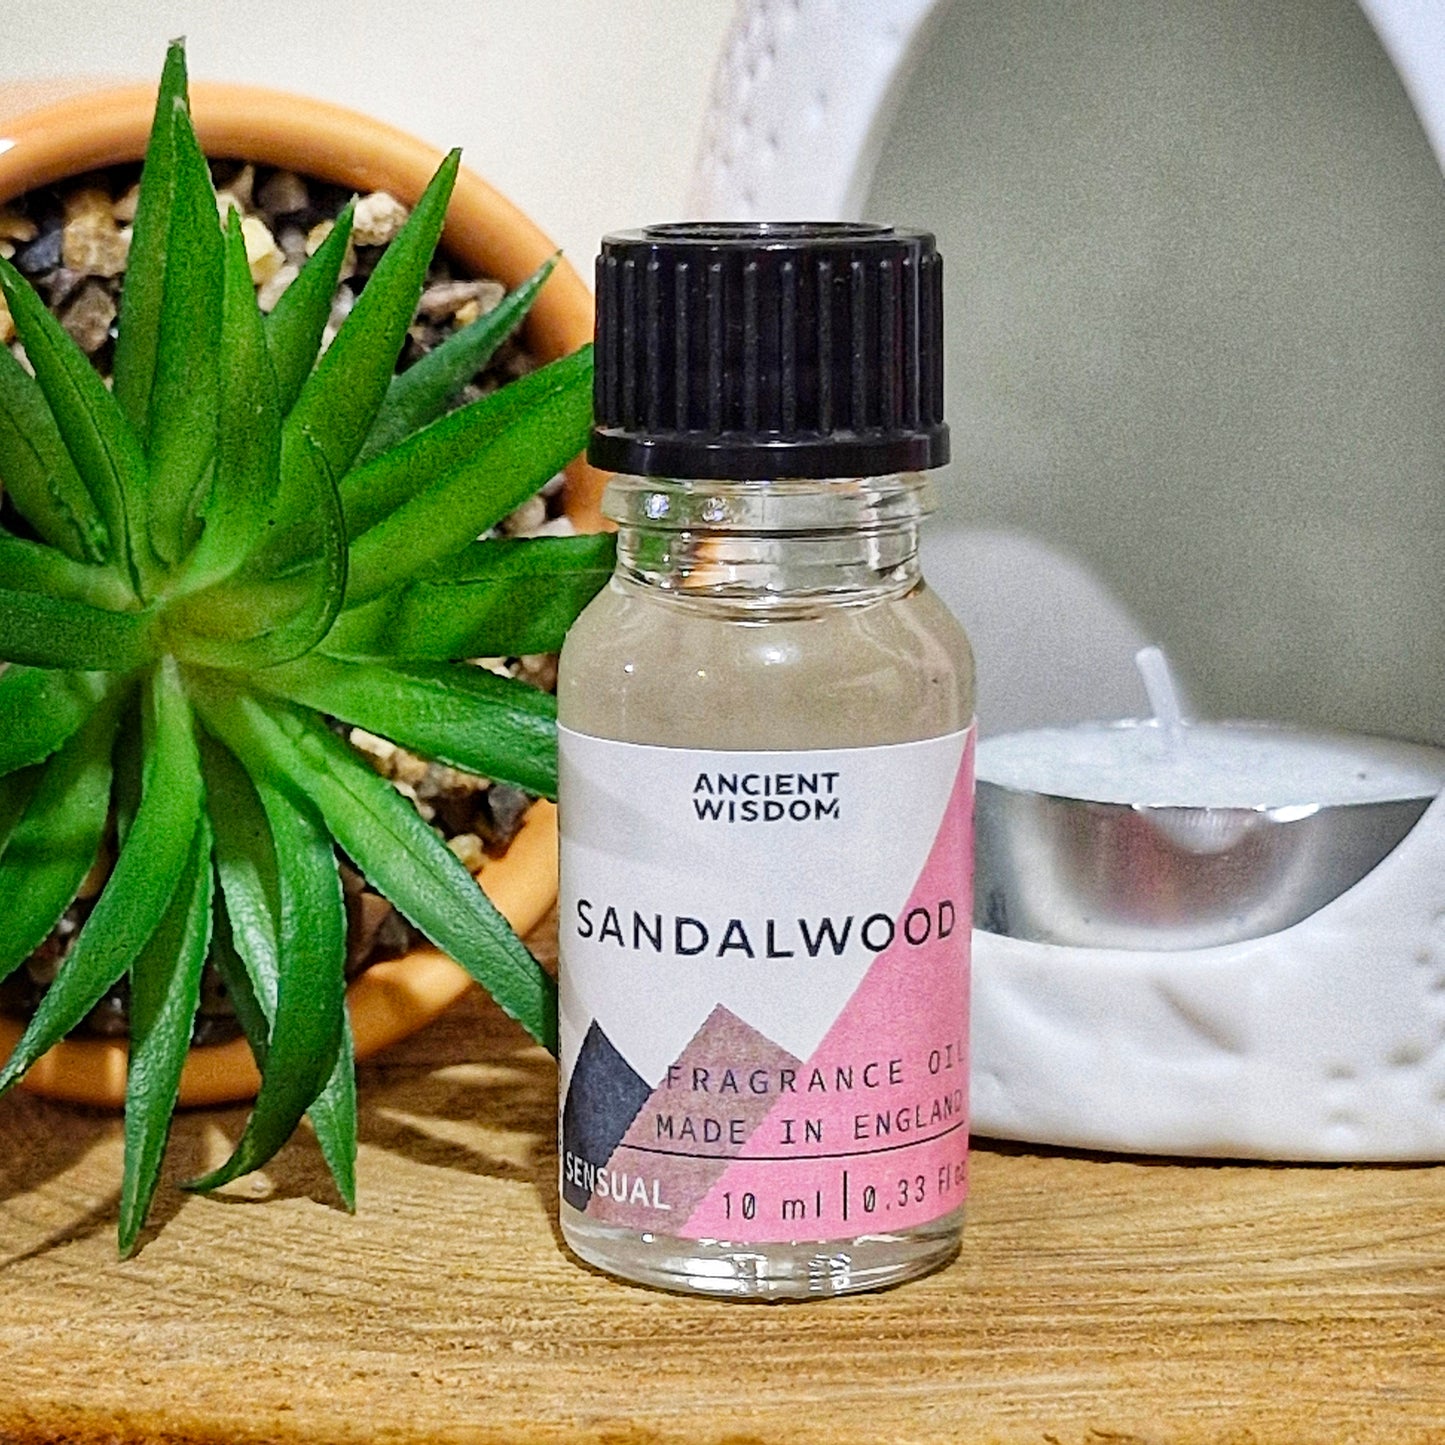 A 10ml bottle of sandalwood fragrance oil 